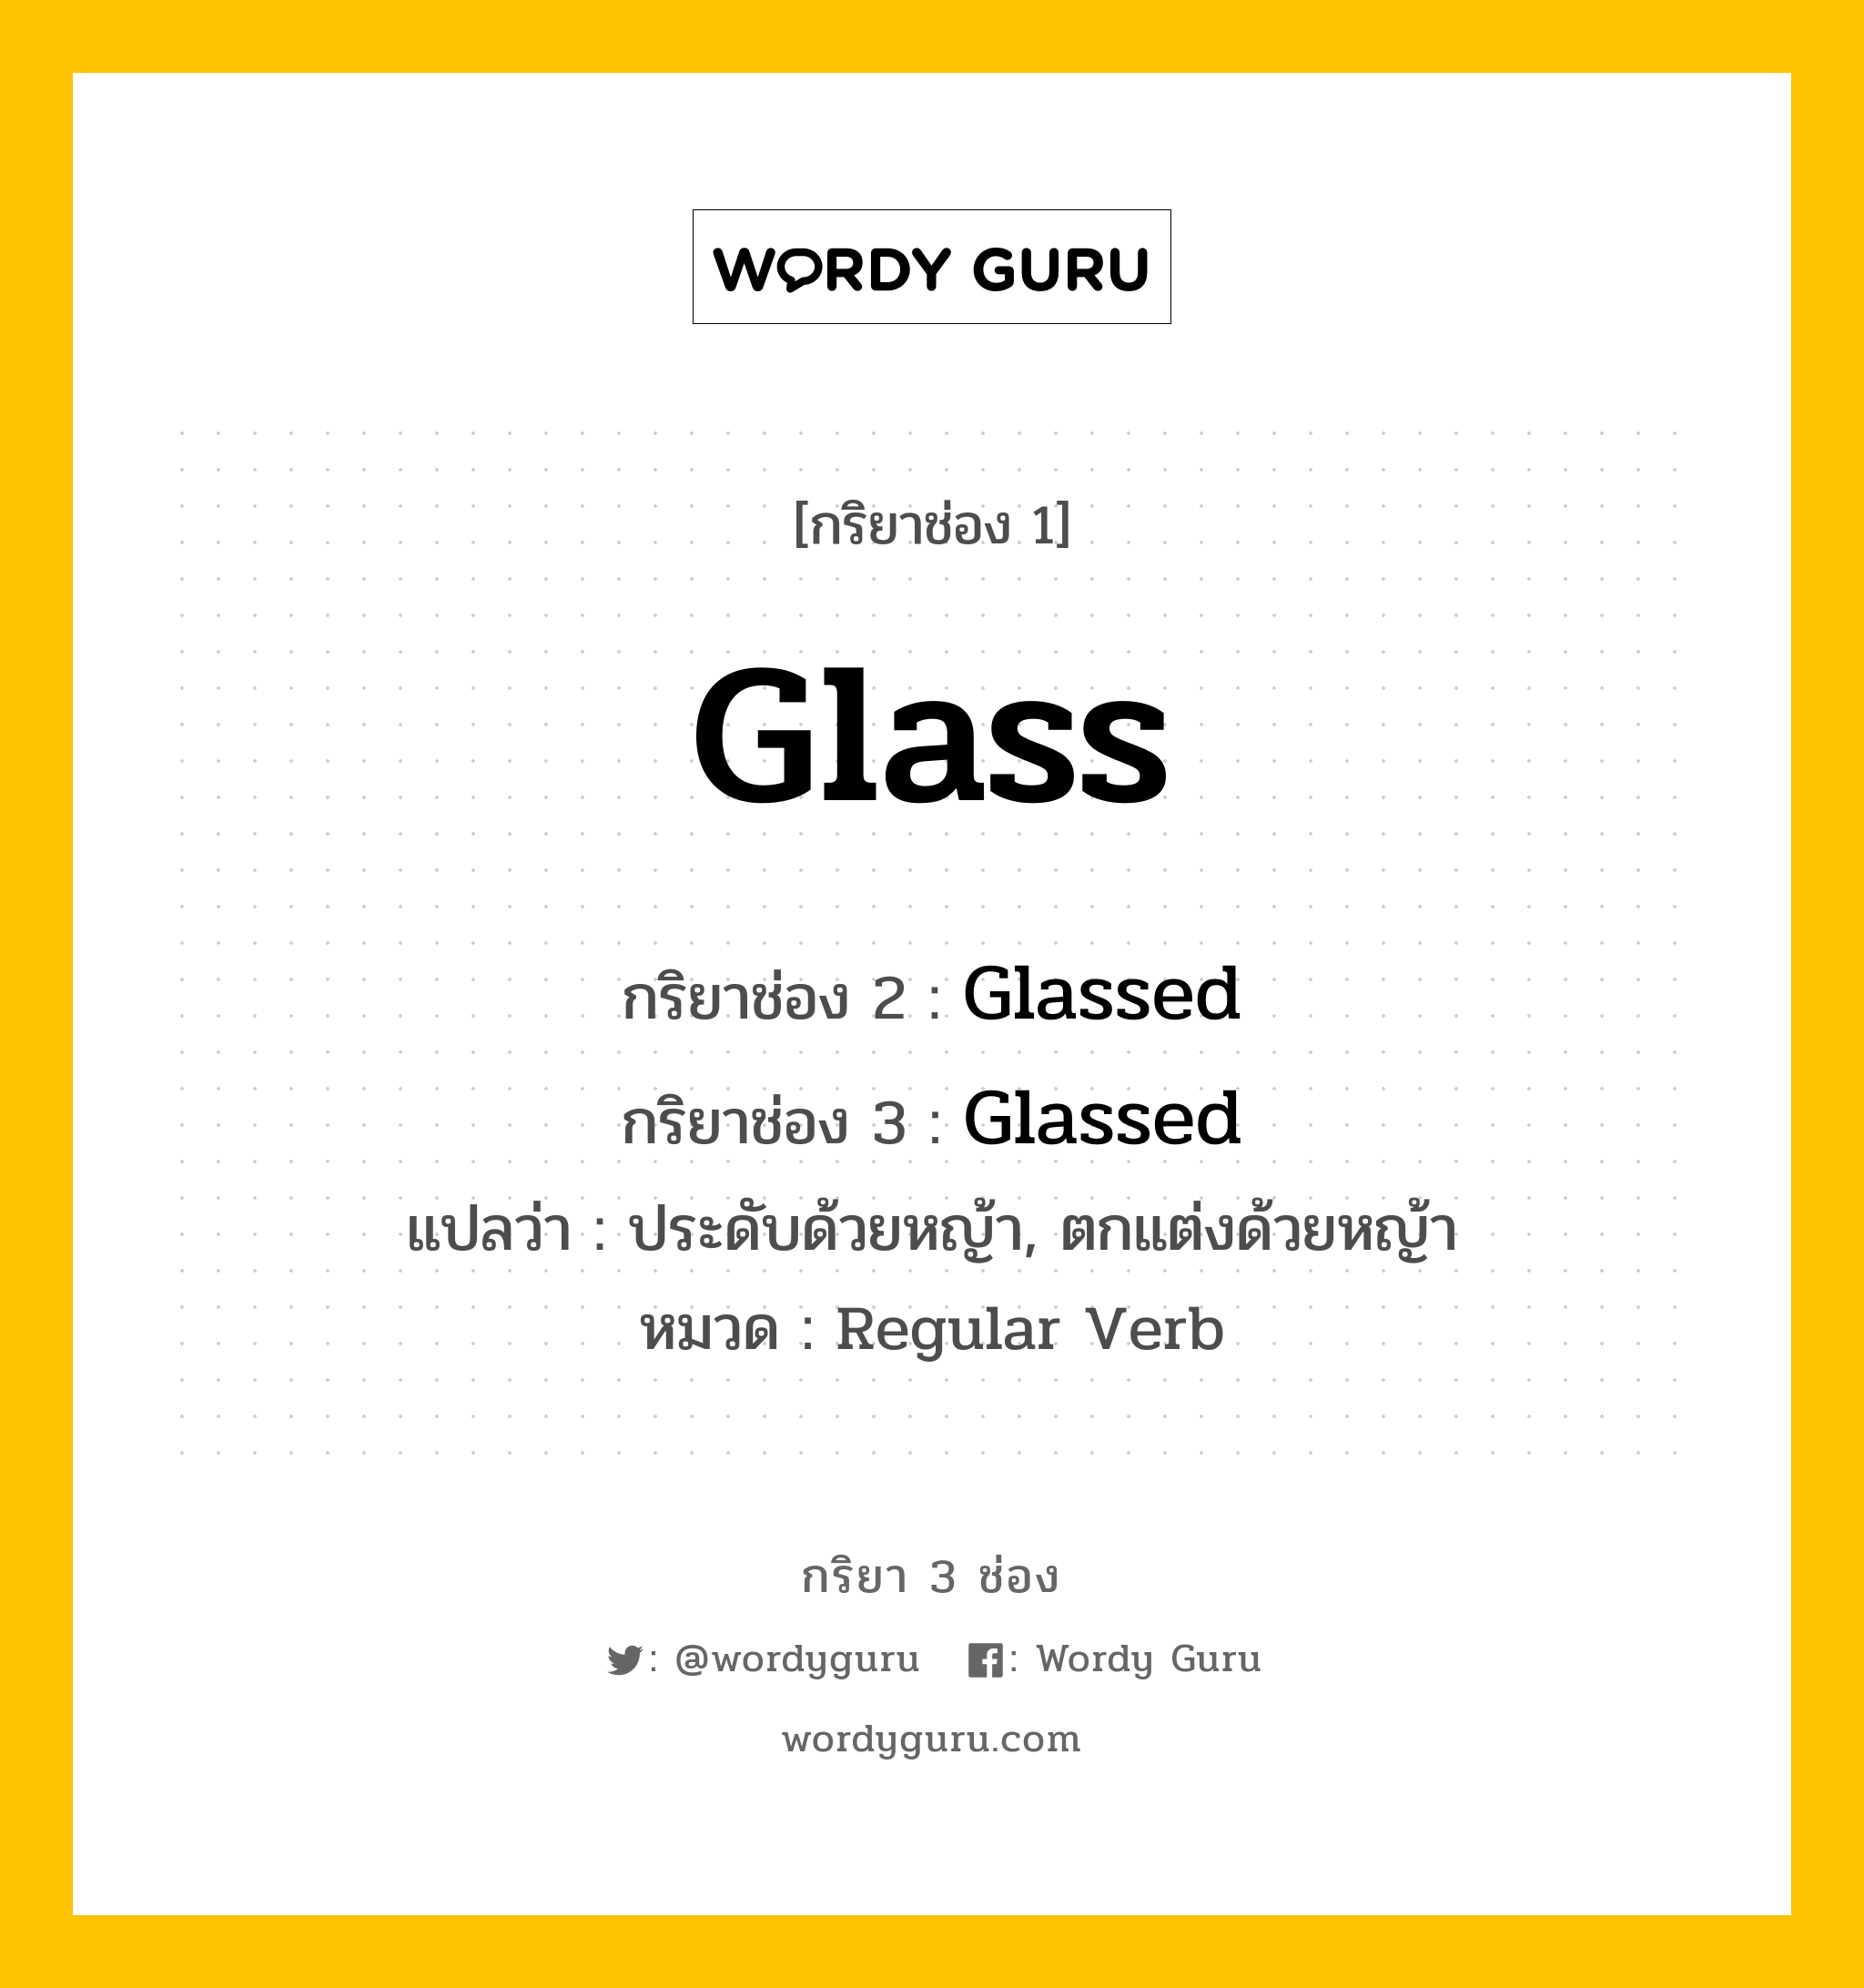 กริยา 3 ช่อง: Glass ช่อง 2 Glass ช่อง 3 คืออะไร, กริยาช่อง 1 Glass กริยาช่อง 2 Glassed กริยาช่อง 3 Glassed แปลว่า ประดับด้วยหญ้า, ตกแต่งด้วยหญ้า หมวด Regular Verb หมวด Regular Verb